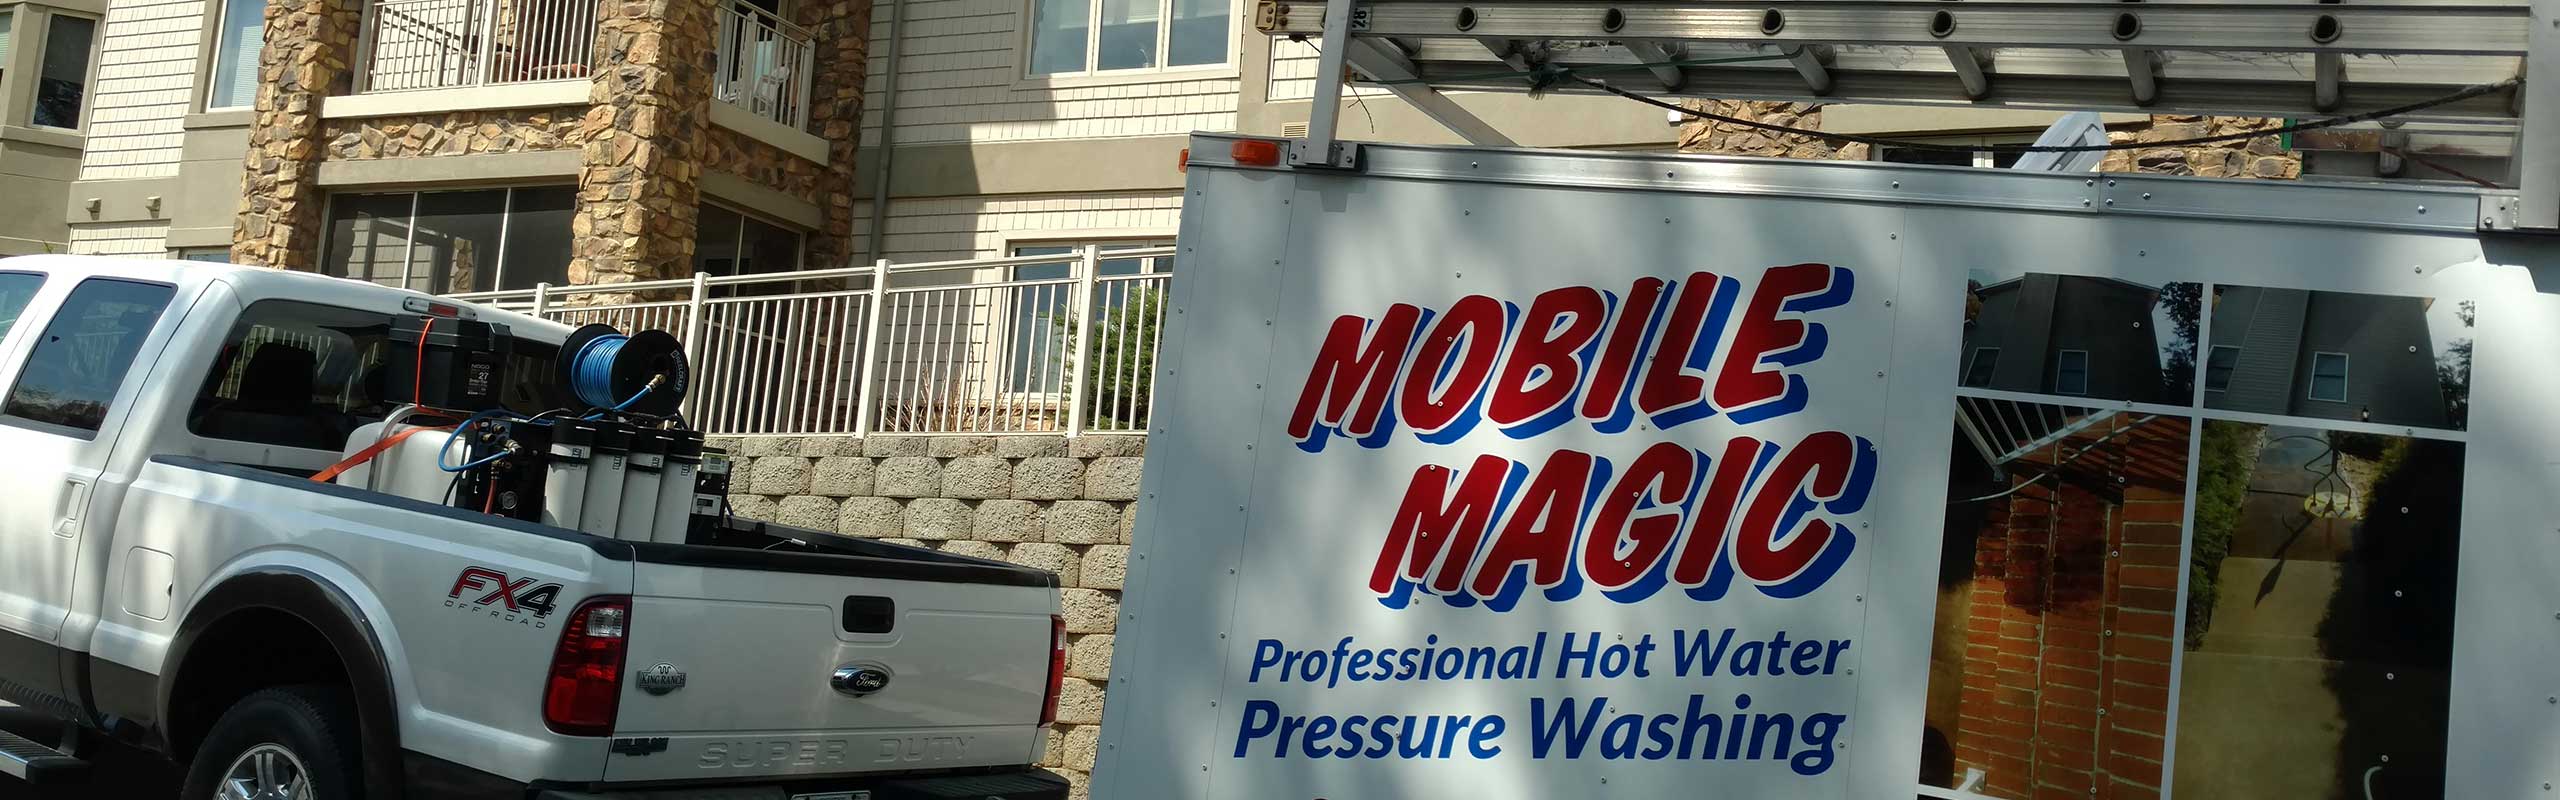 truck Mobile Magic - Asheville Area Pressure Washing